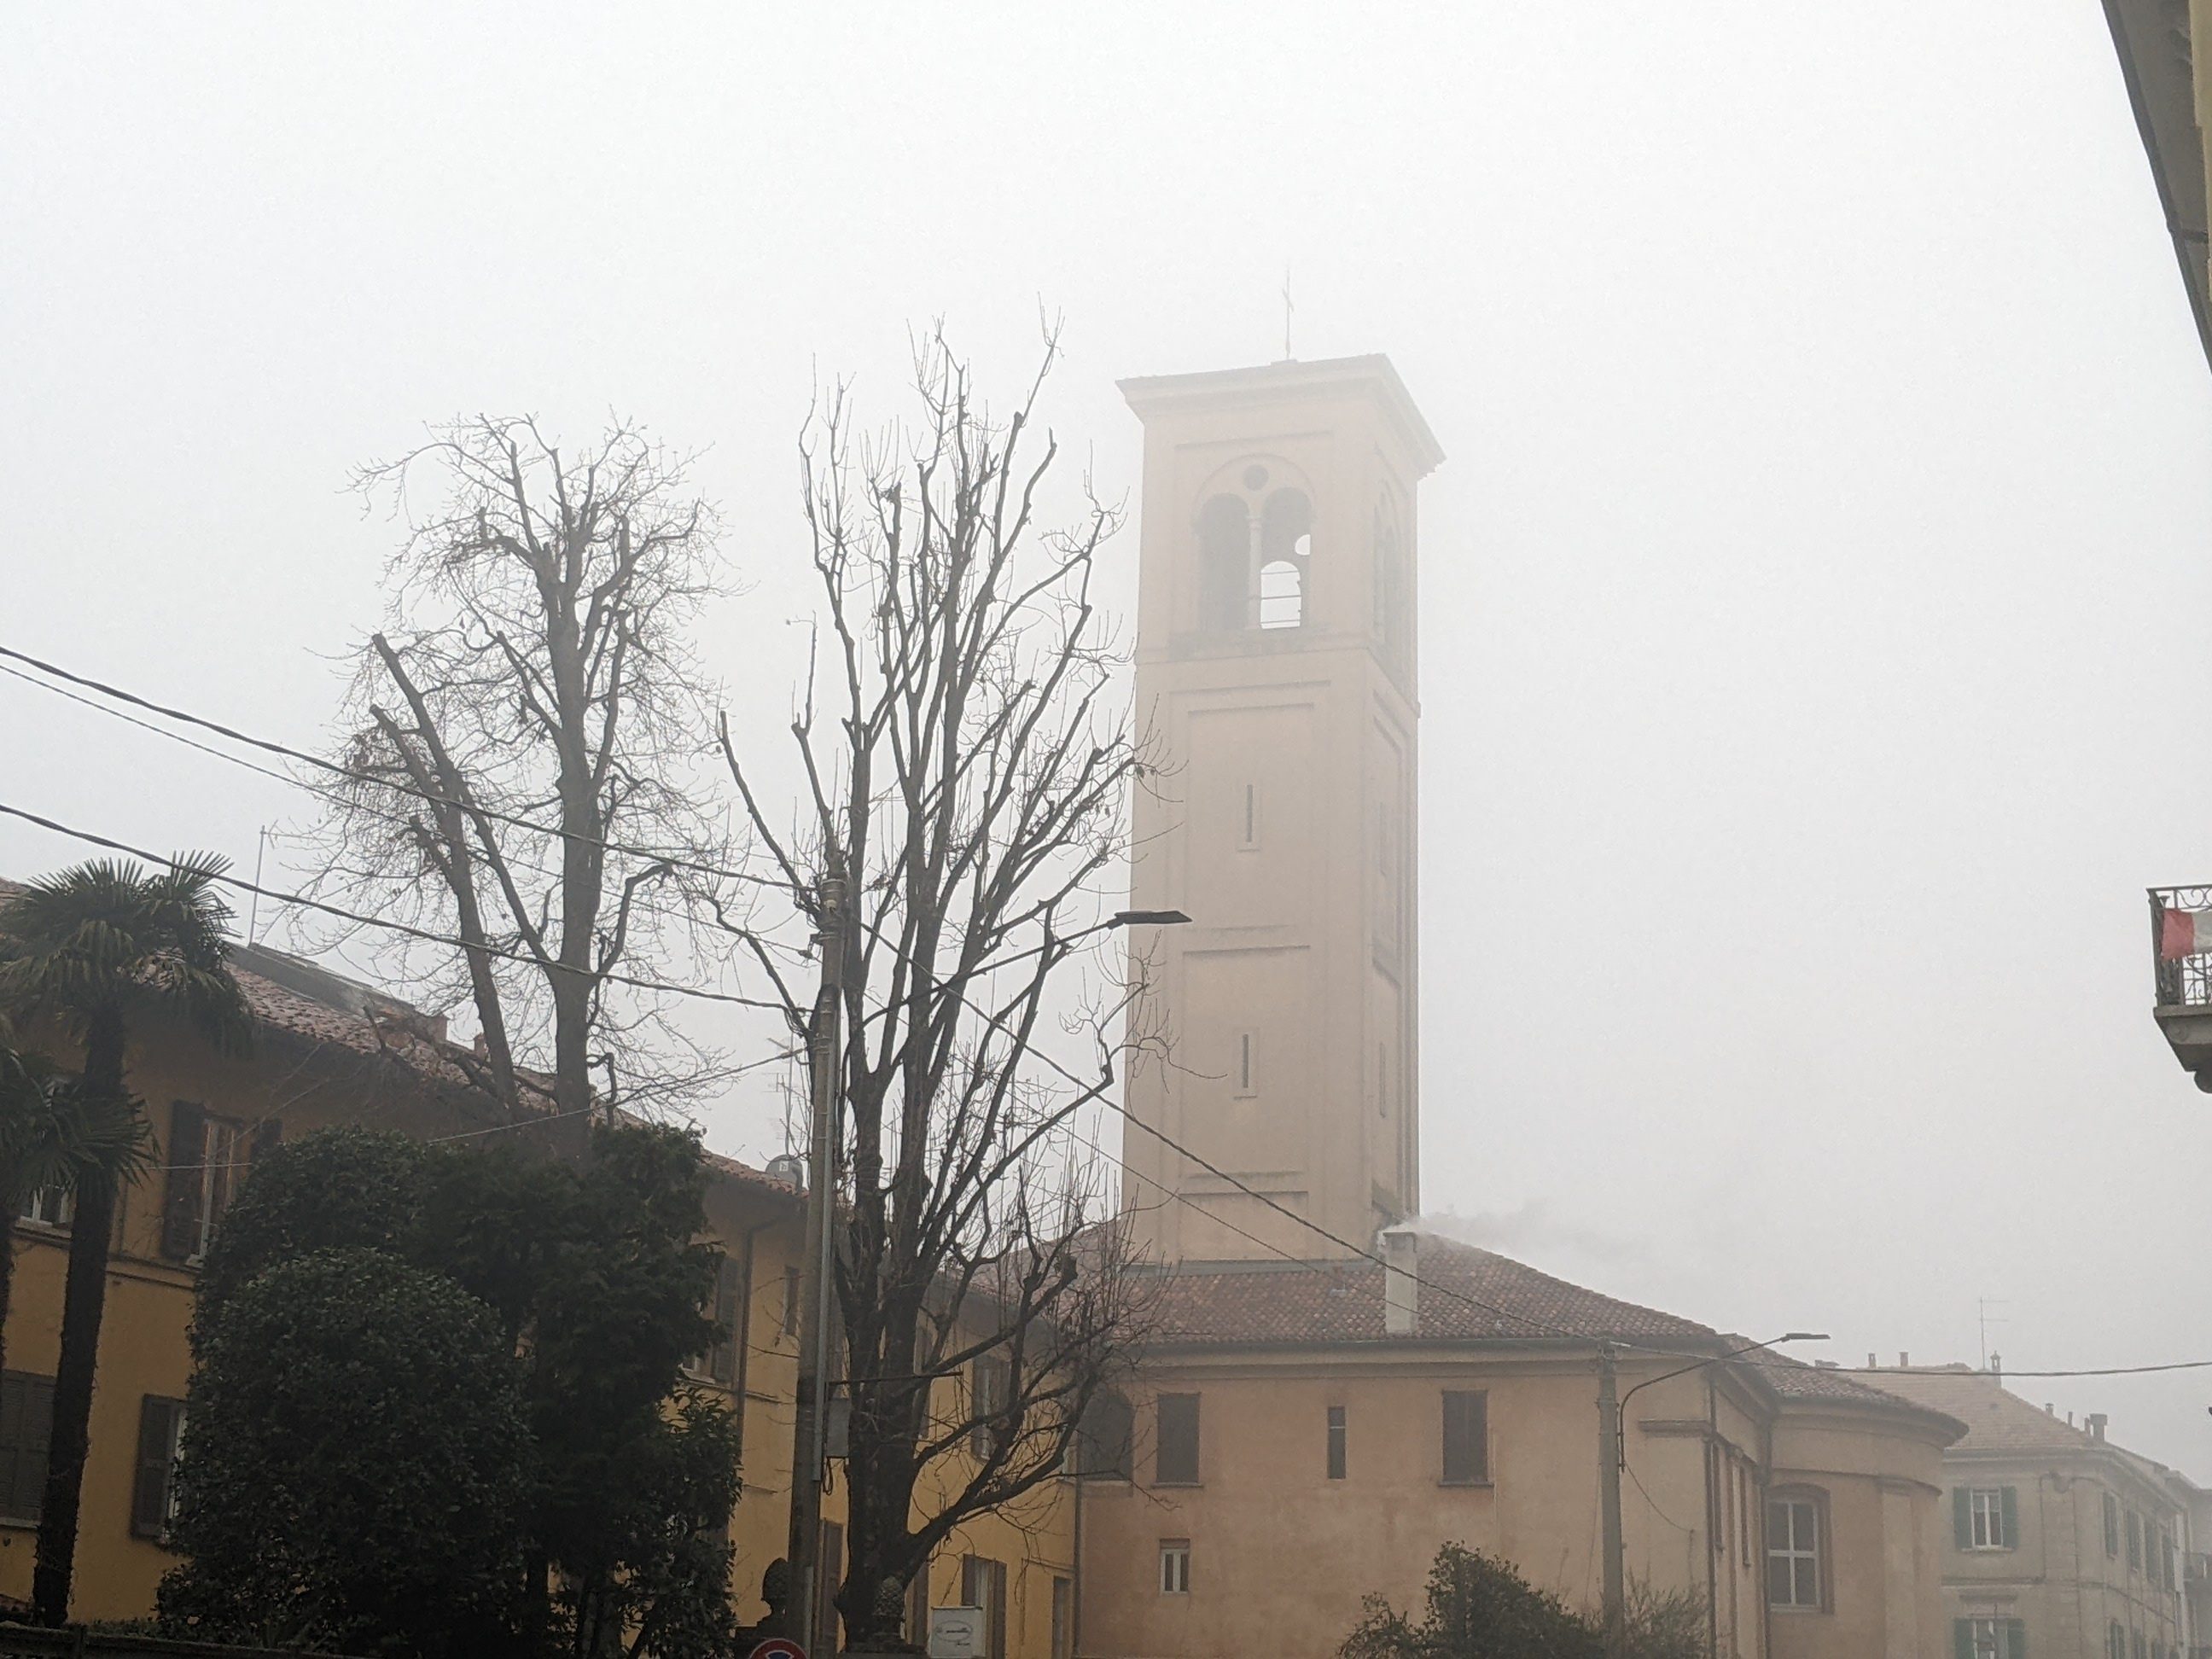 Meteo Saronno, dalla nebbia di sabato 9 al cielo sereno di lunedì 11